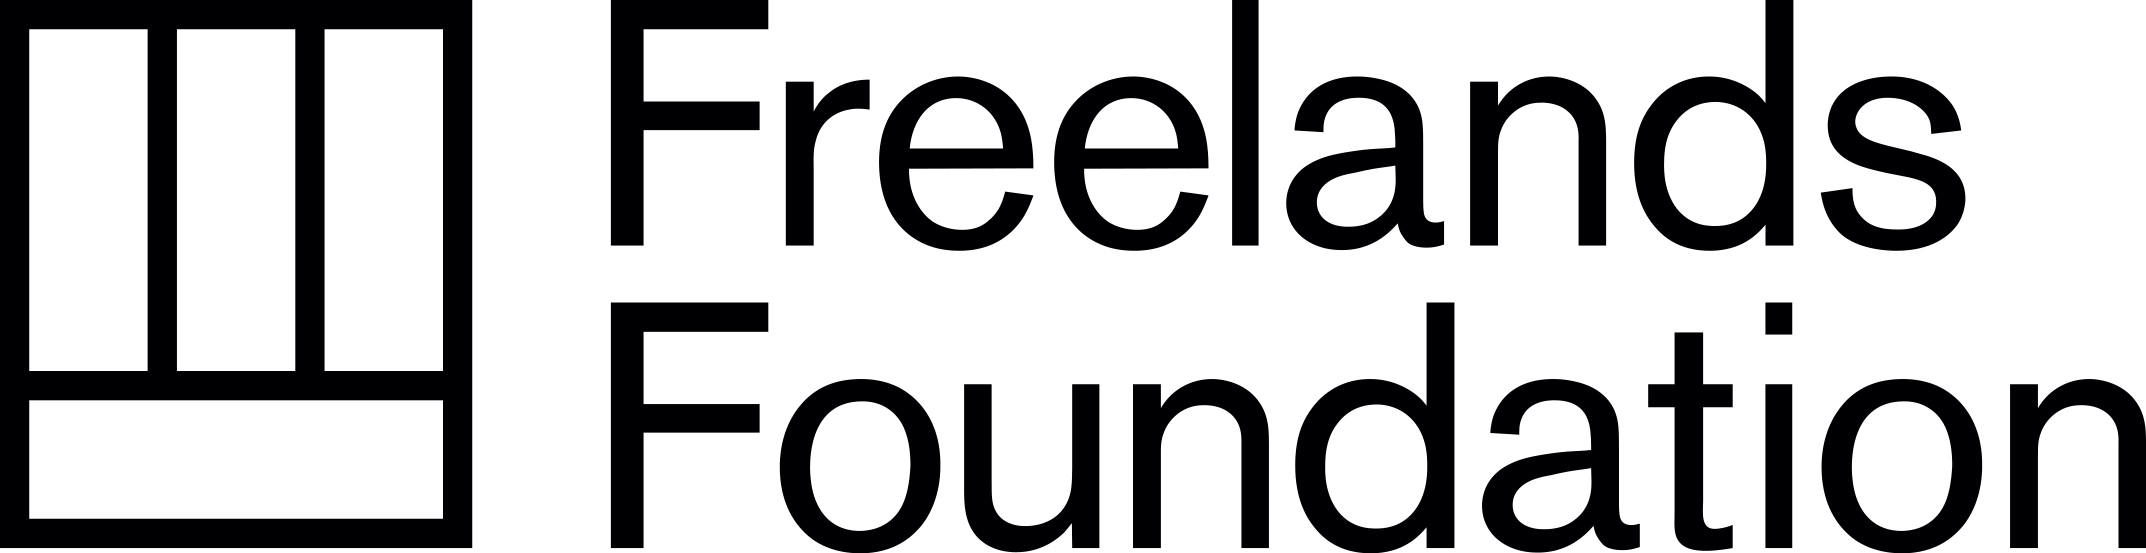 Freelands Fellowship logo